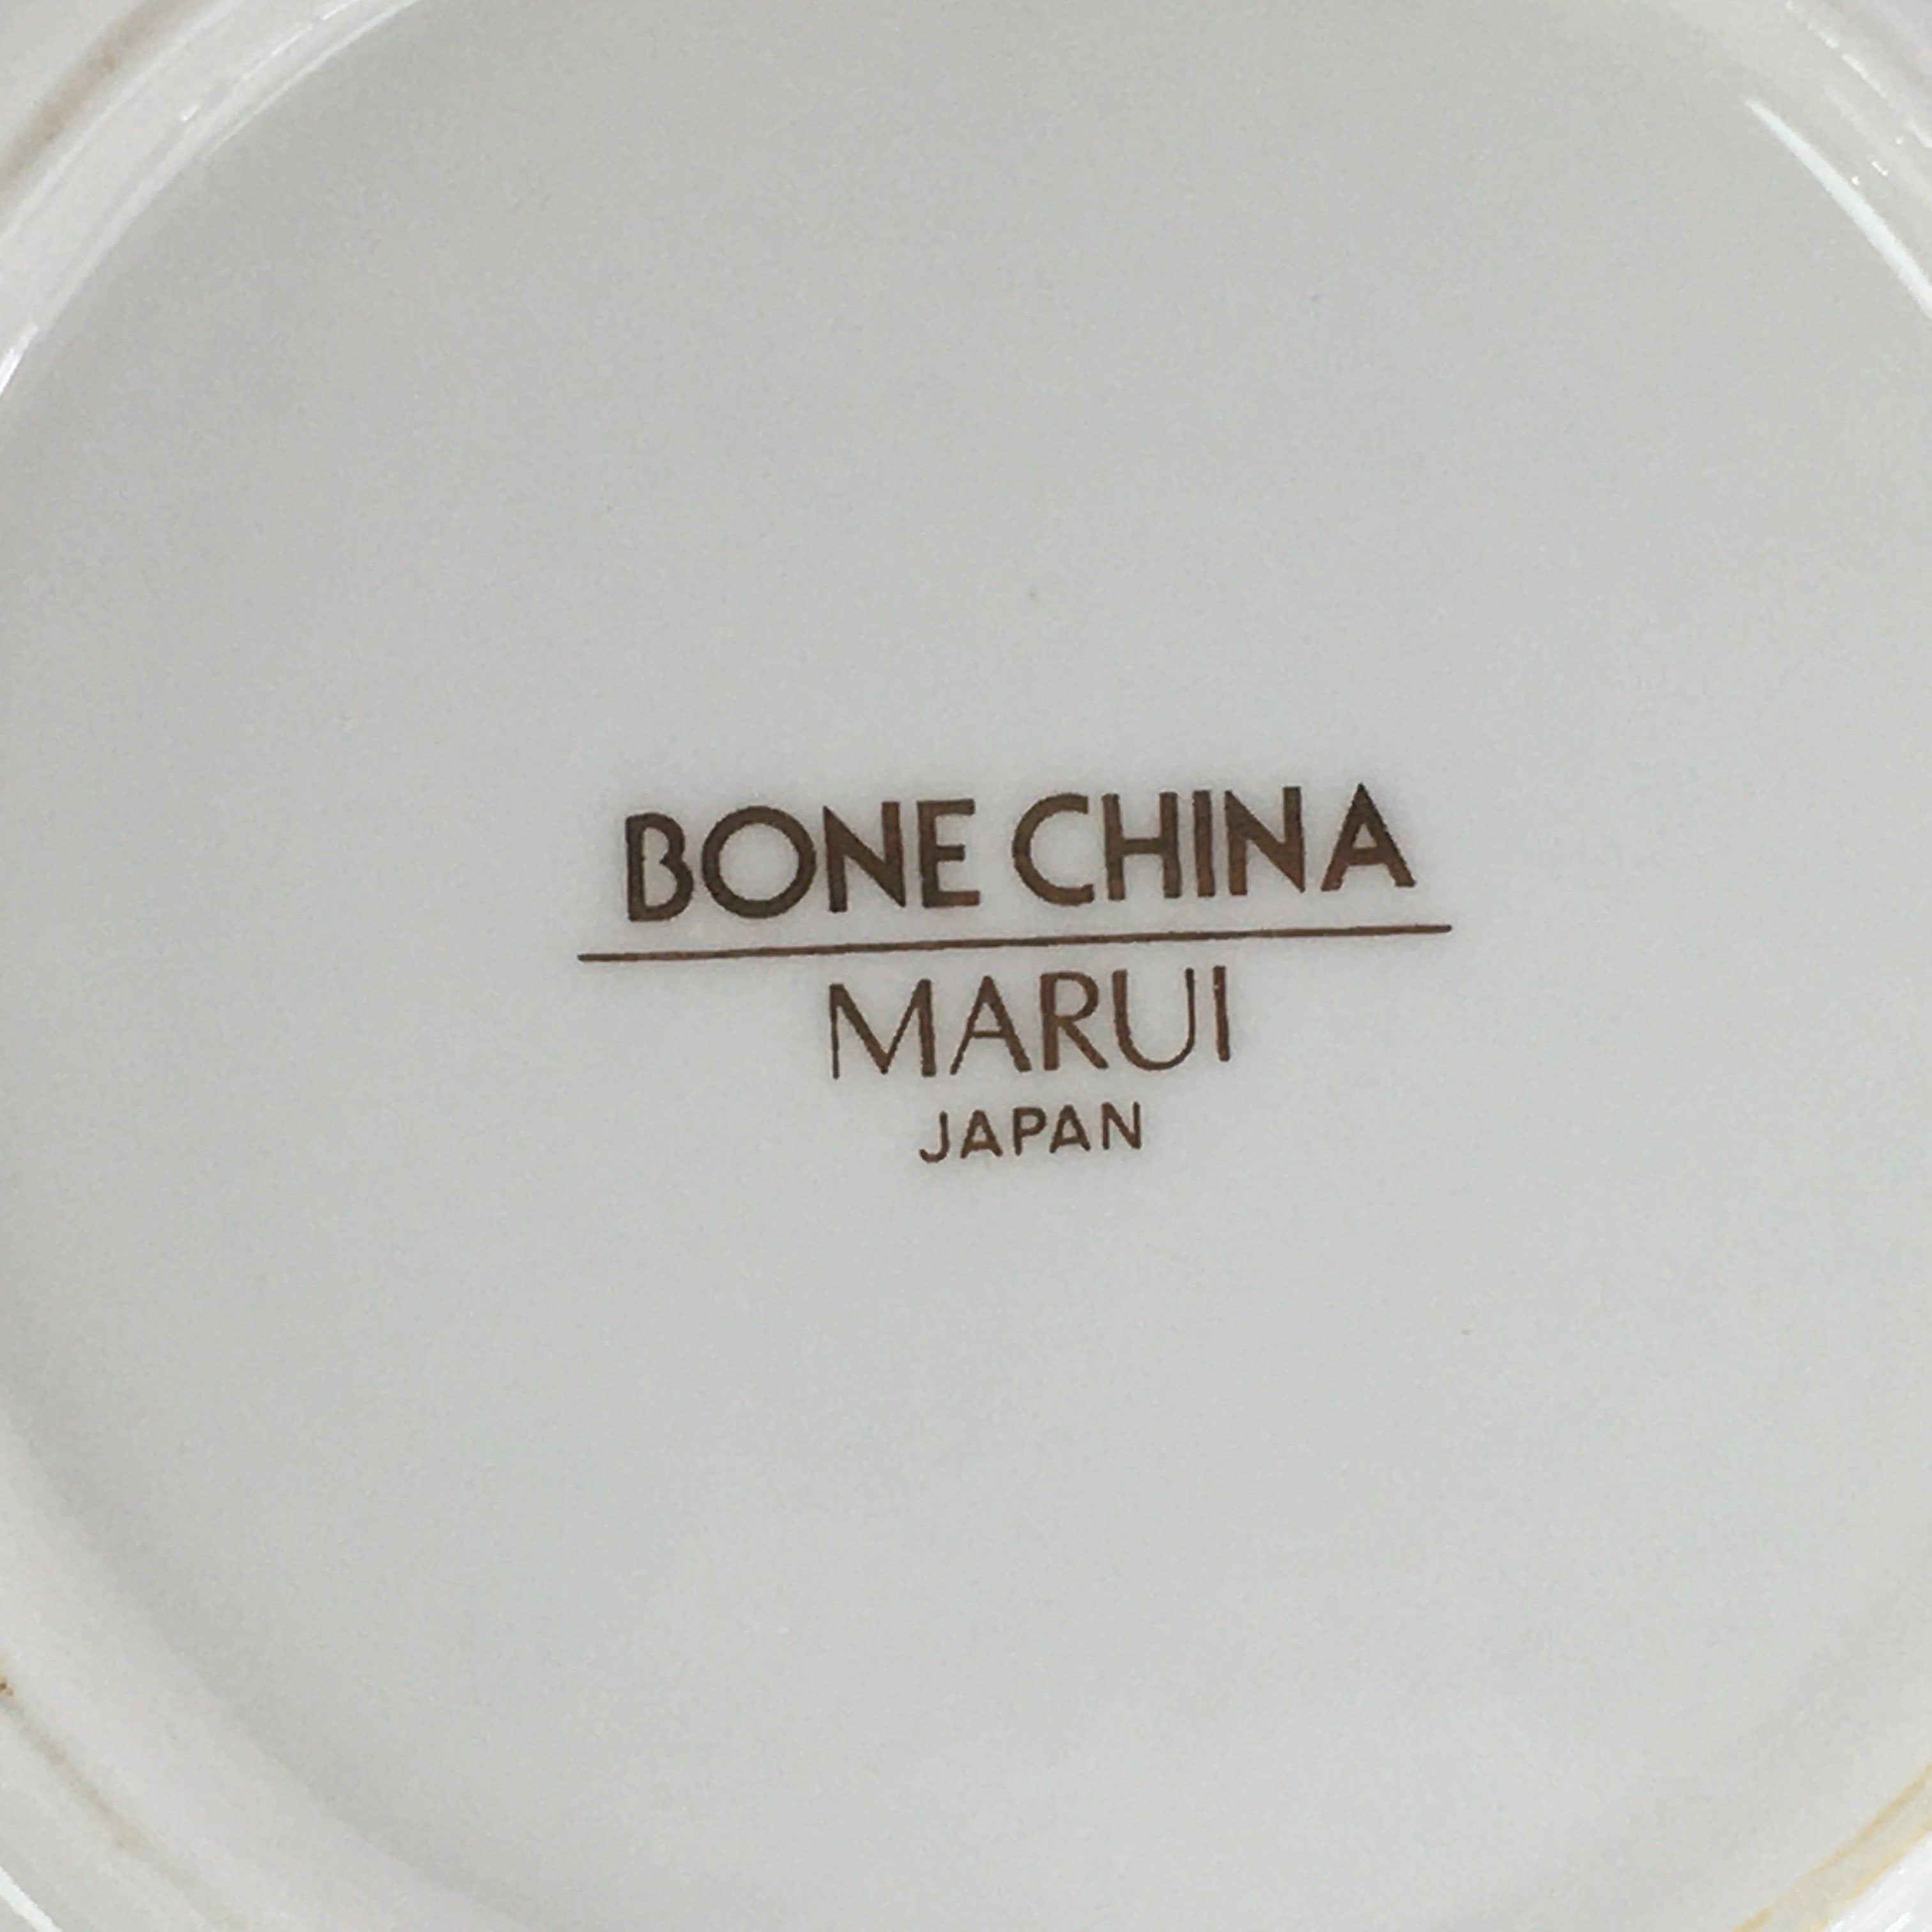 japanese porcelain marks flower